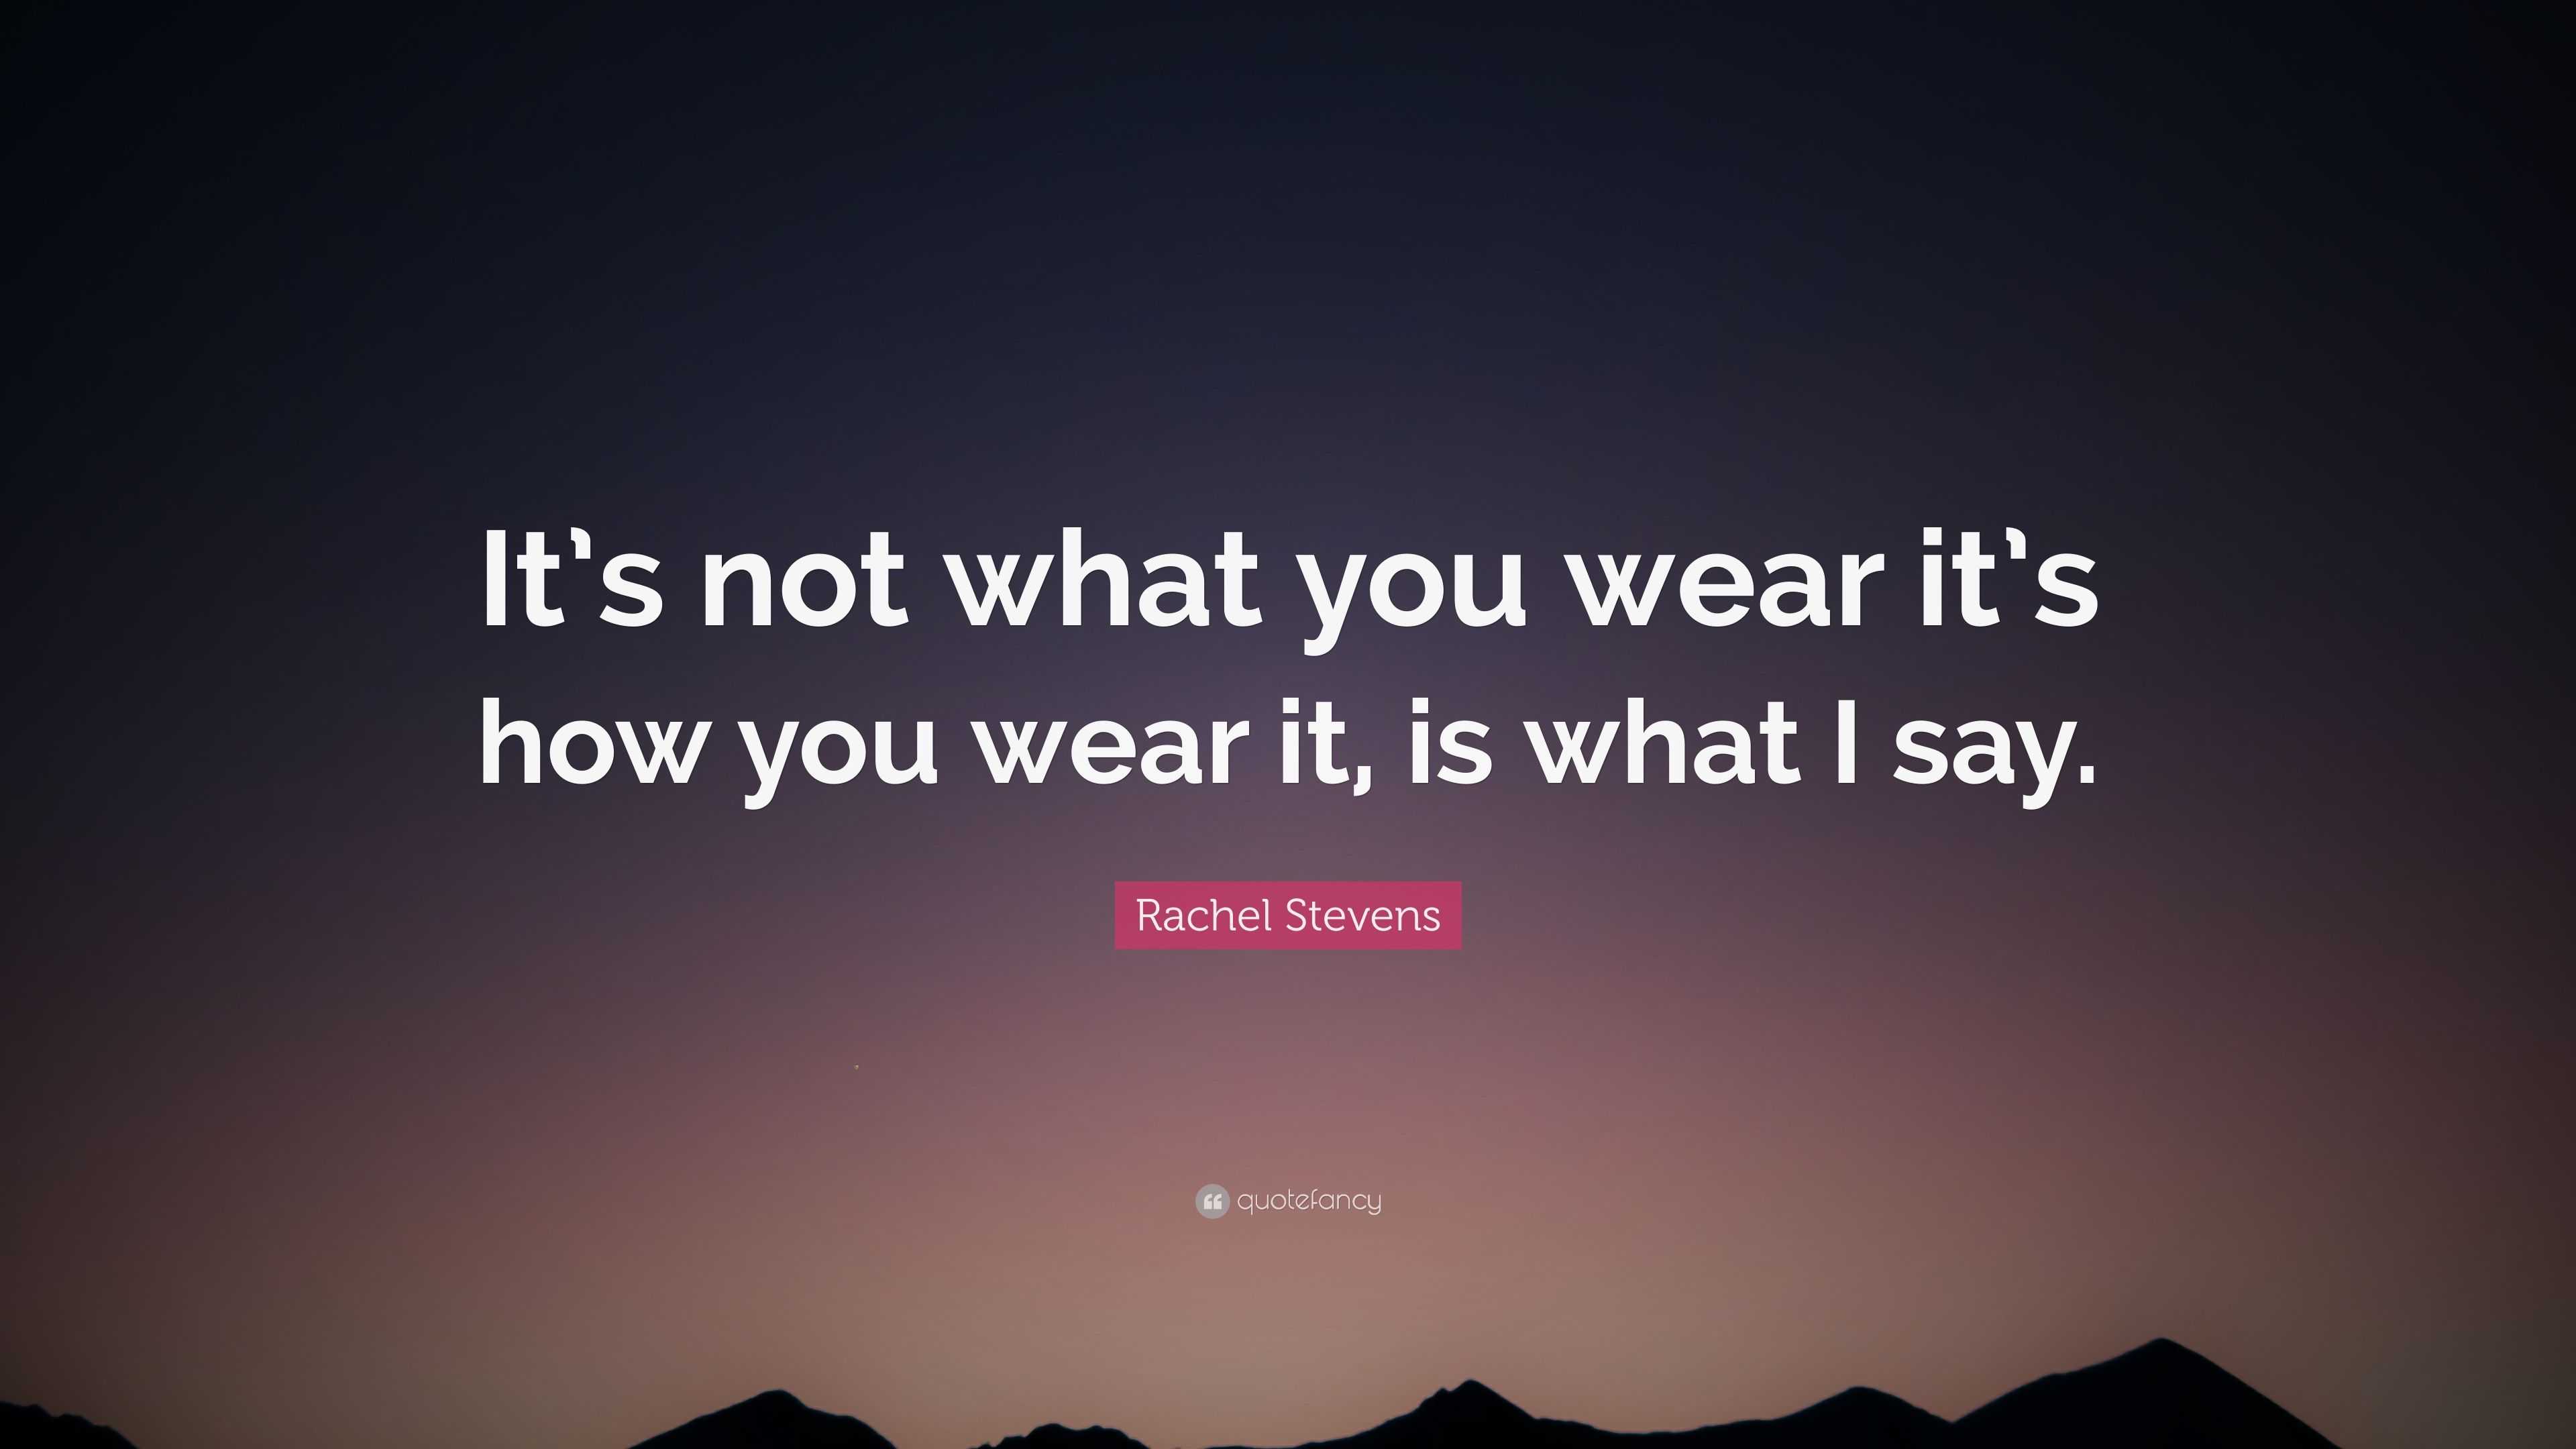 Rachel Stevens Quote: “It's not what you wear it's how you wear it